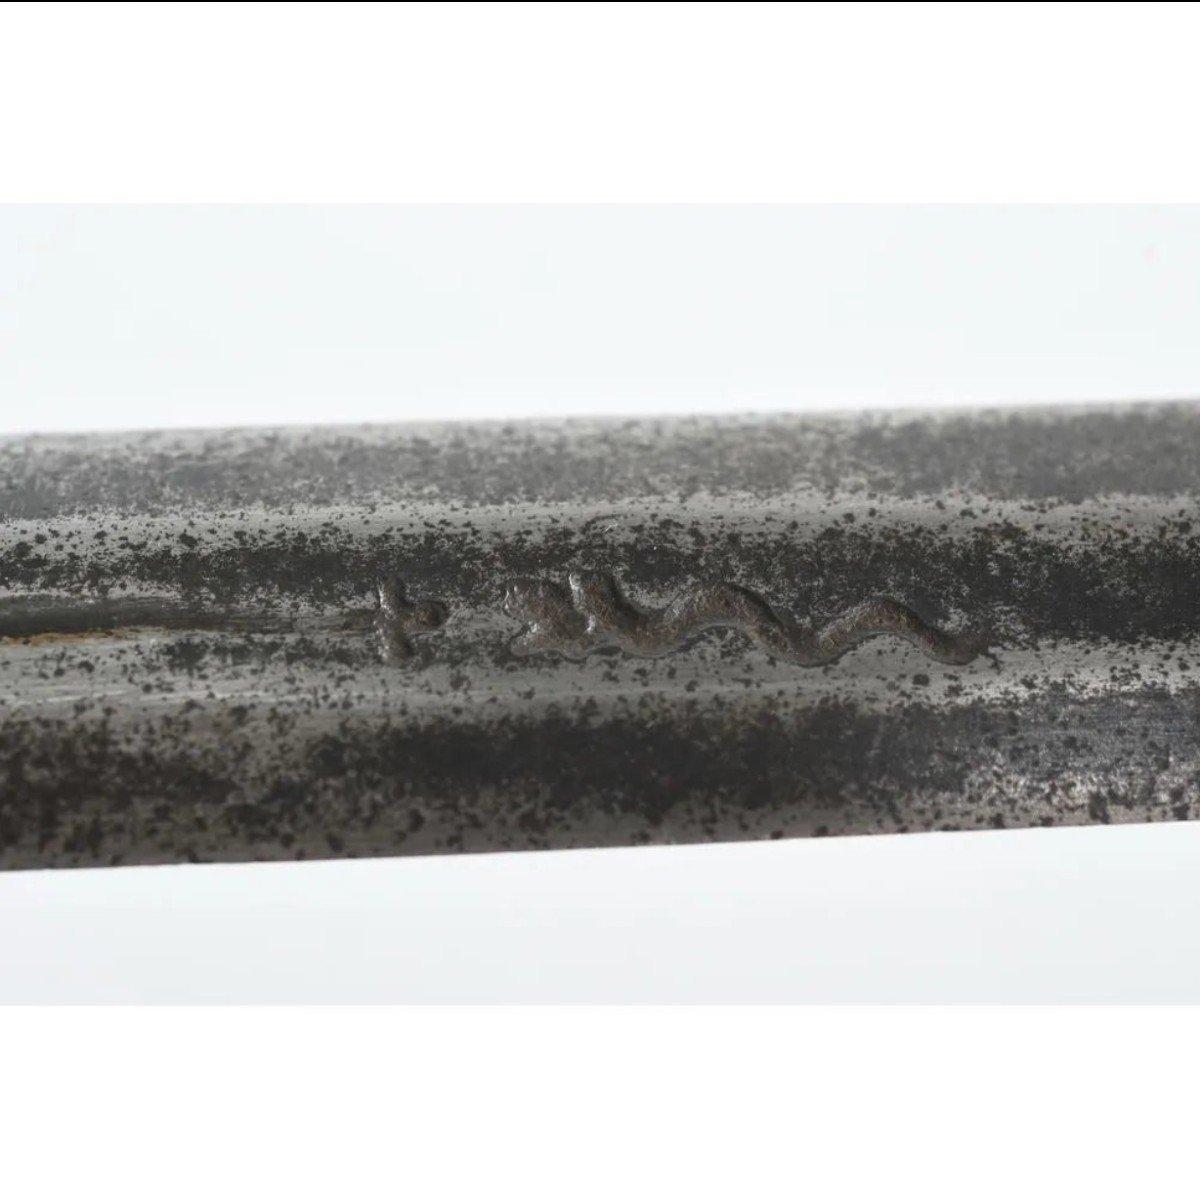 L'épée forte à La Tazza en fer
ÉPÉE FORTE avec TAZZA en fer. (Bon état de conservation). L.110 l.26.
Marque sur la lame du serpent. 
